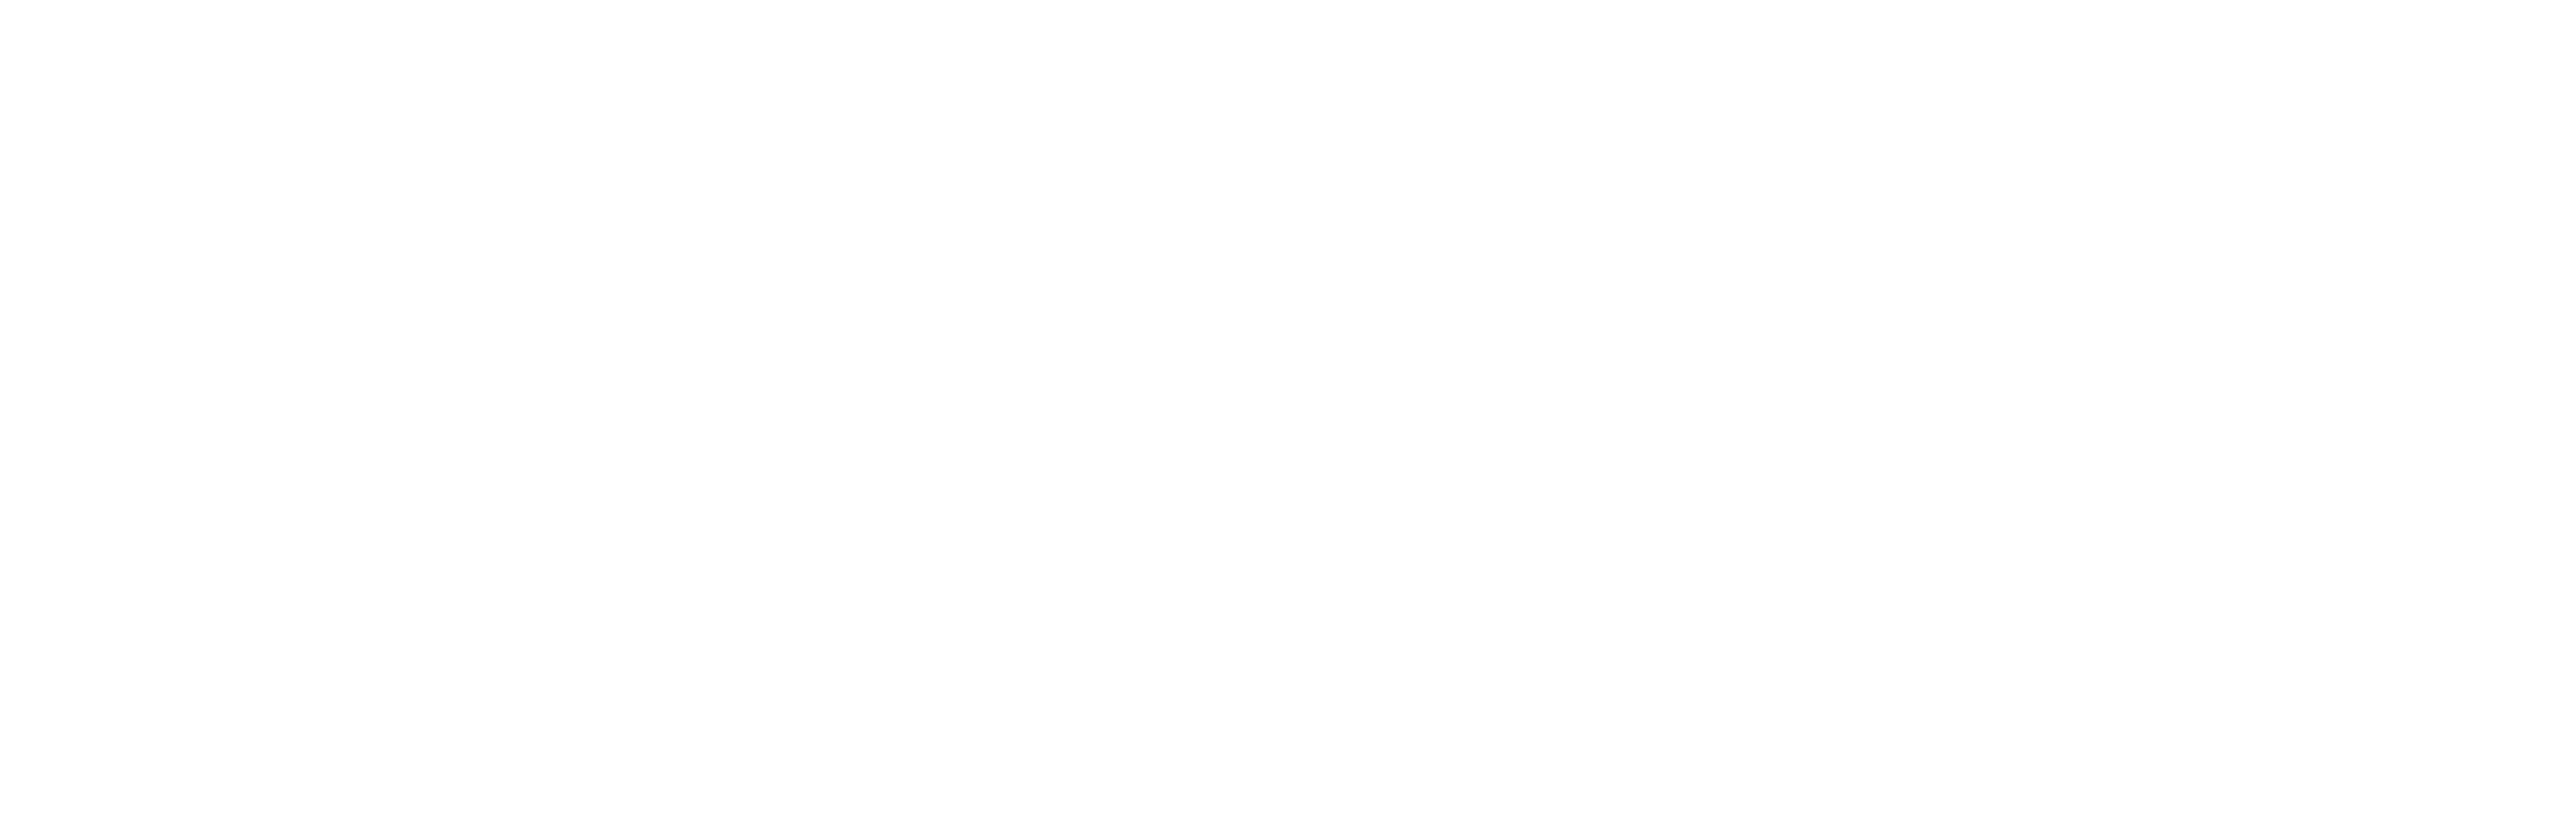 Solvinity logo